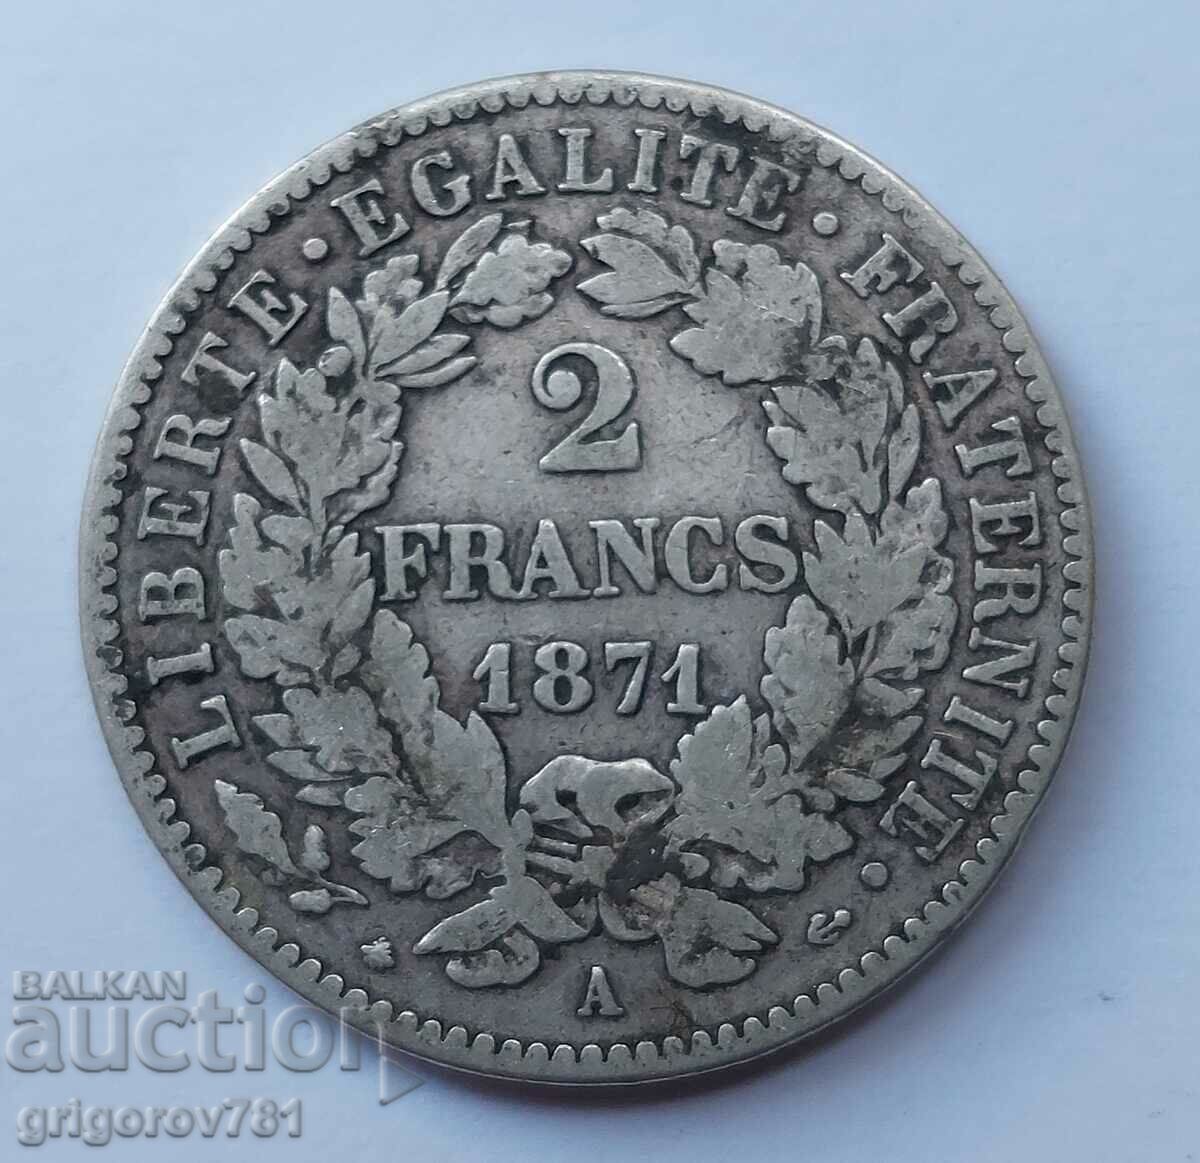 Ασημένιο 2 φράγκα Γαλλία 1871 A - ασημένιο νόμισμα №27